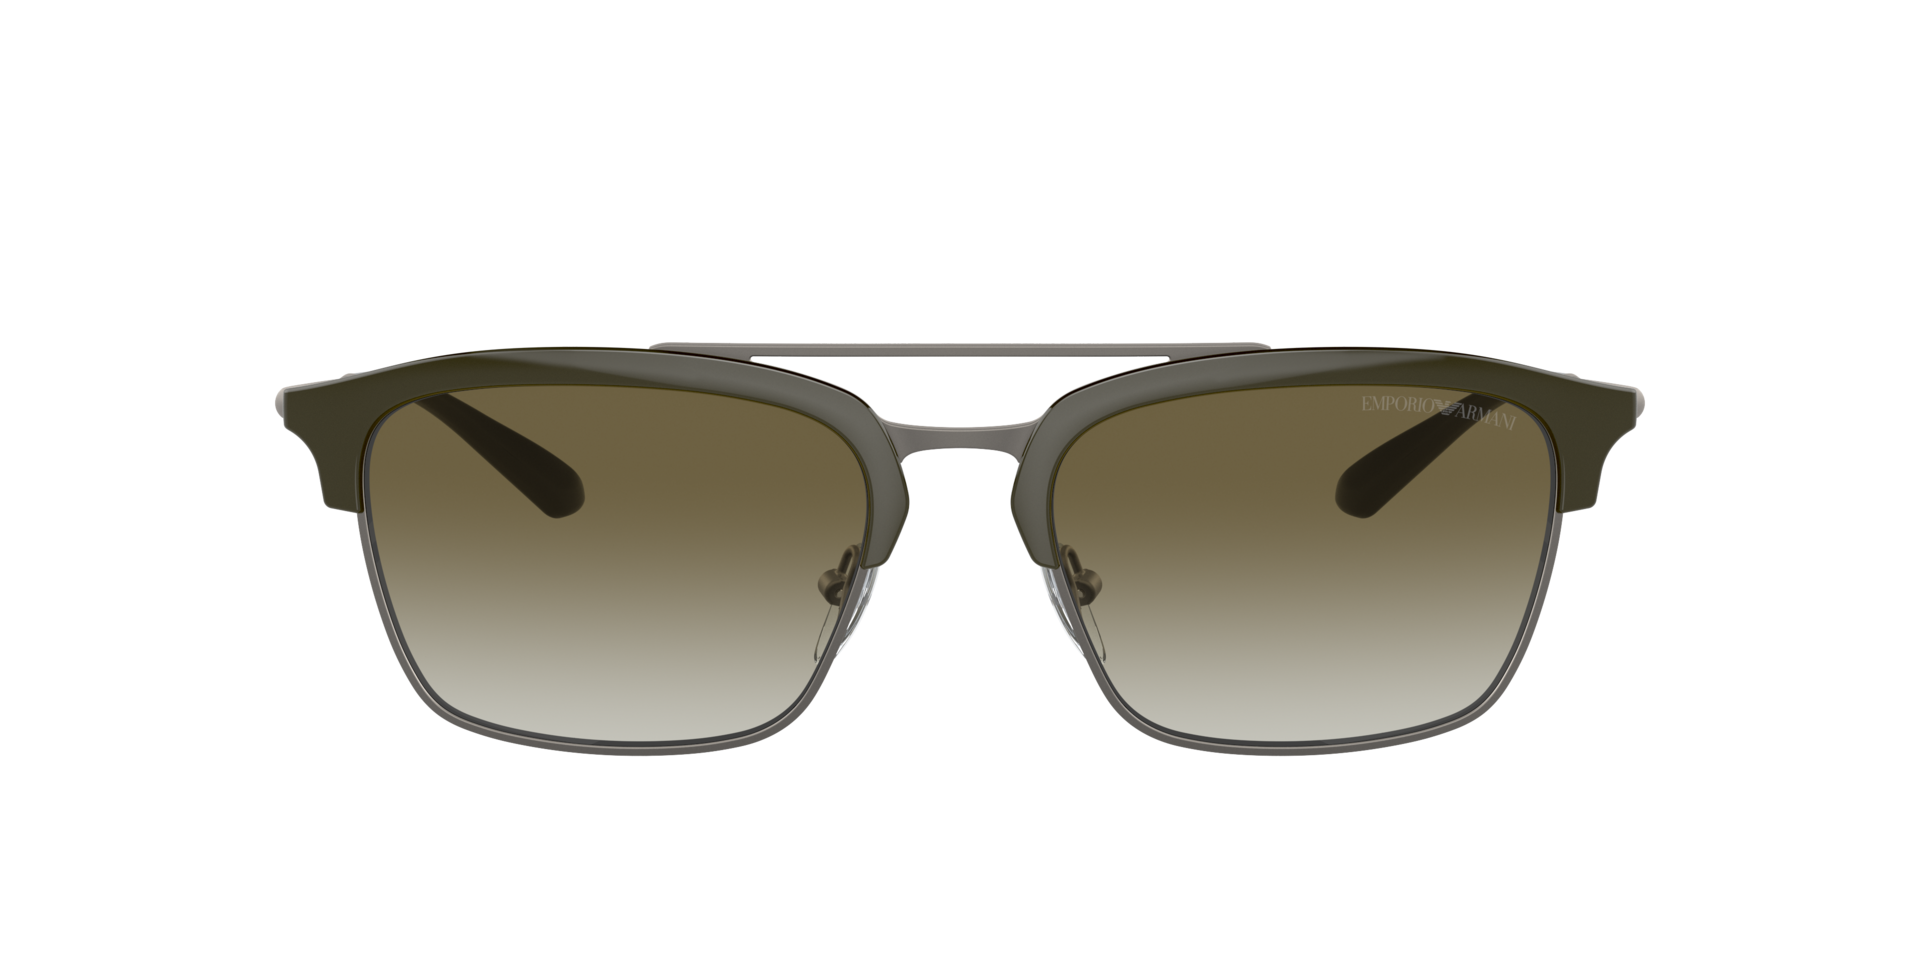 Das Bild zeigt die Sonnenbrille EA4228 30038E von der Marke Emporio Armani in grün/gunmetal.